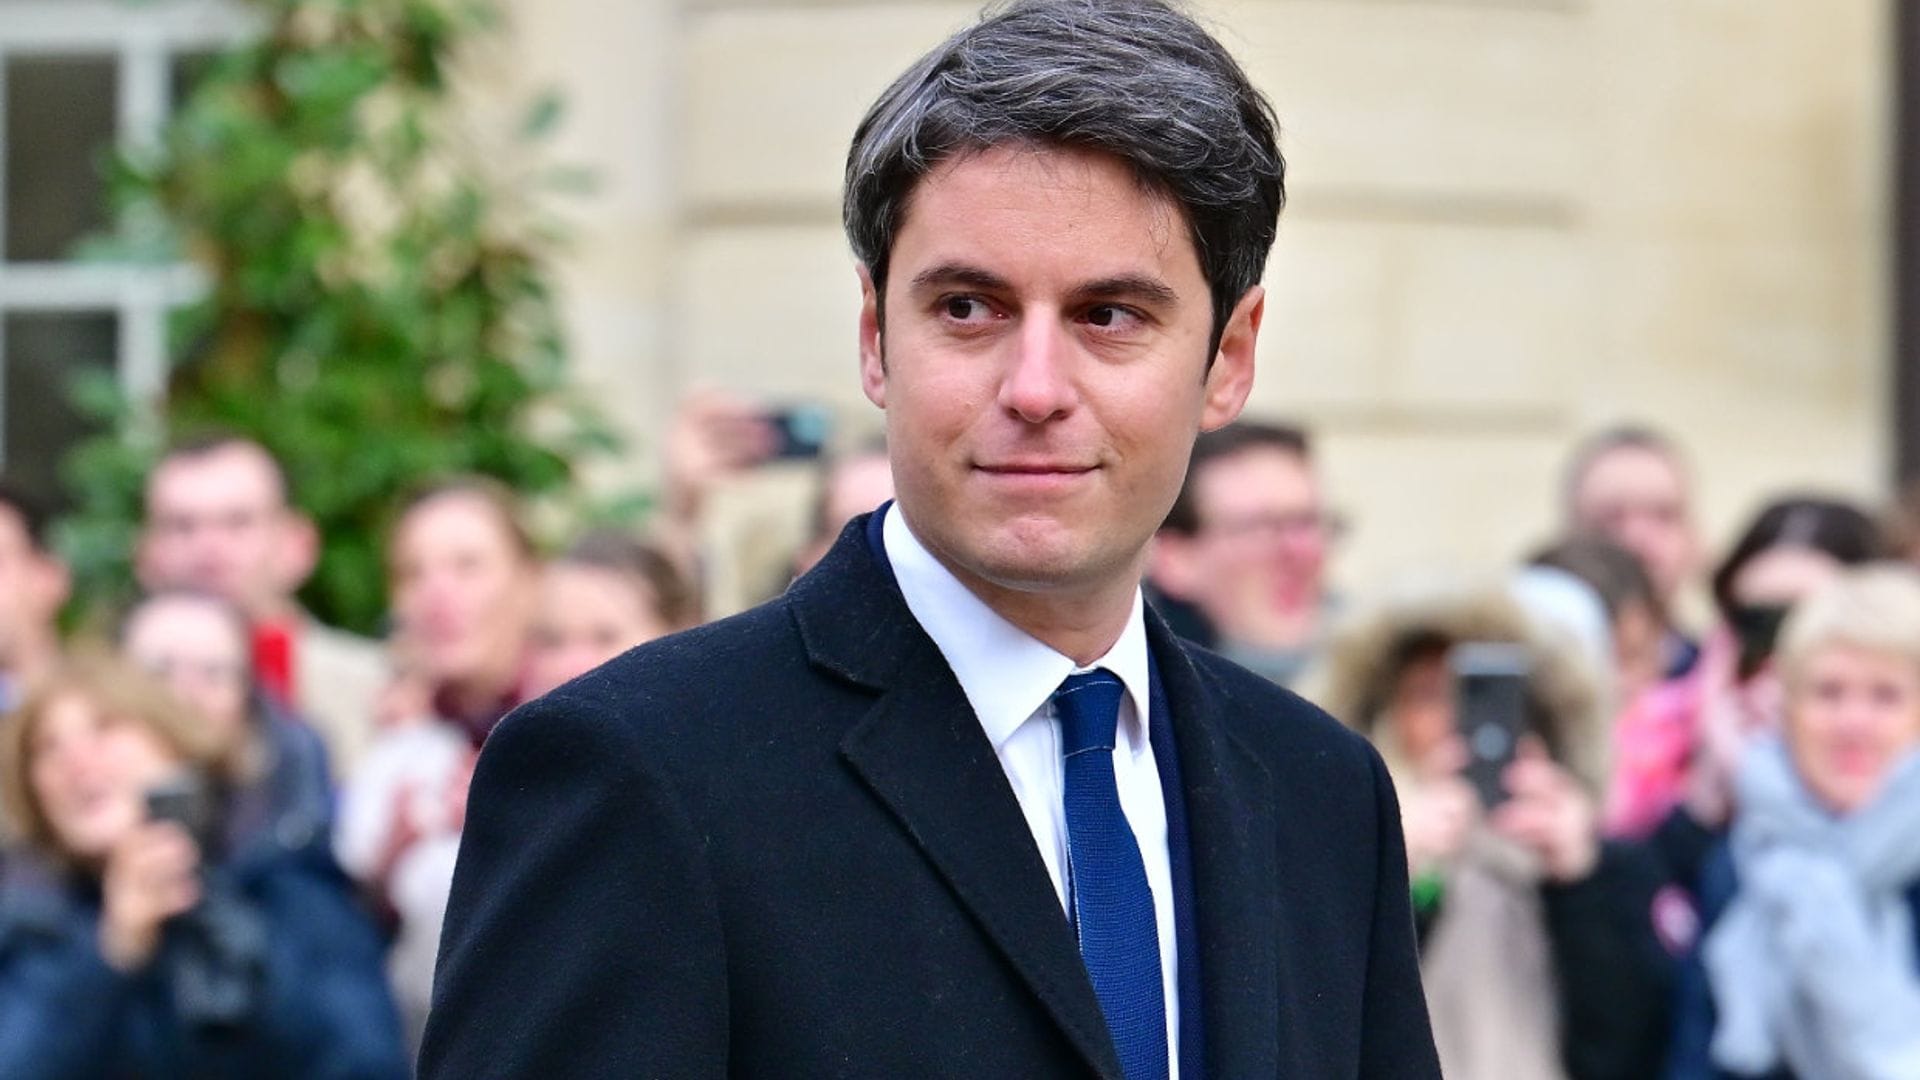 La historia de Gabriel Attal, nuevo primer ministro francés: familia aristocrática y vínculo con Almodóvar